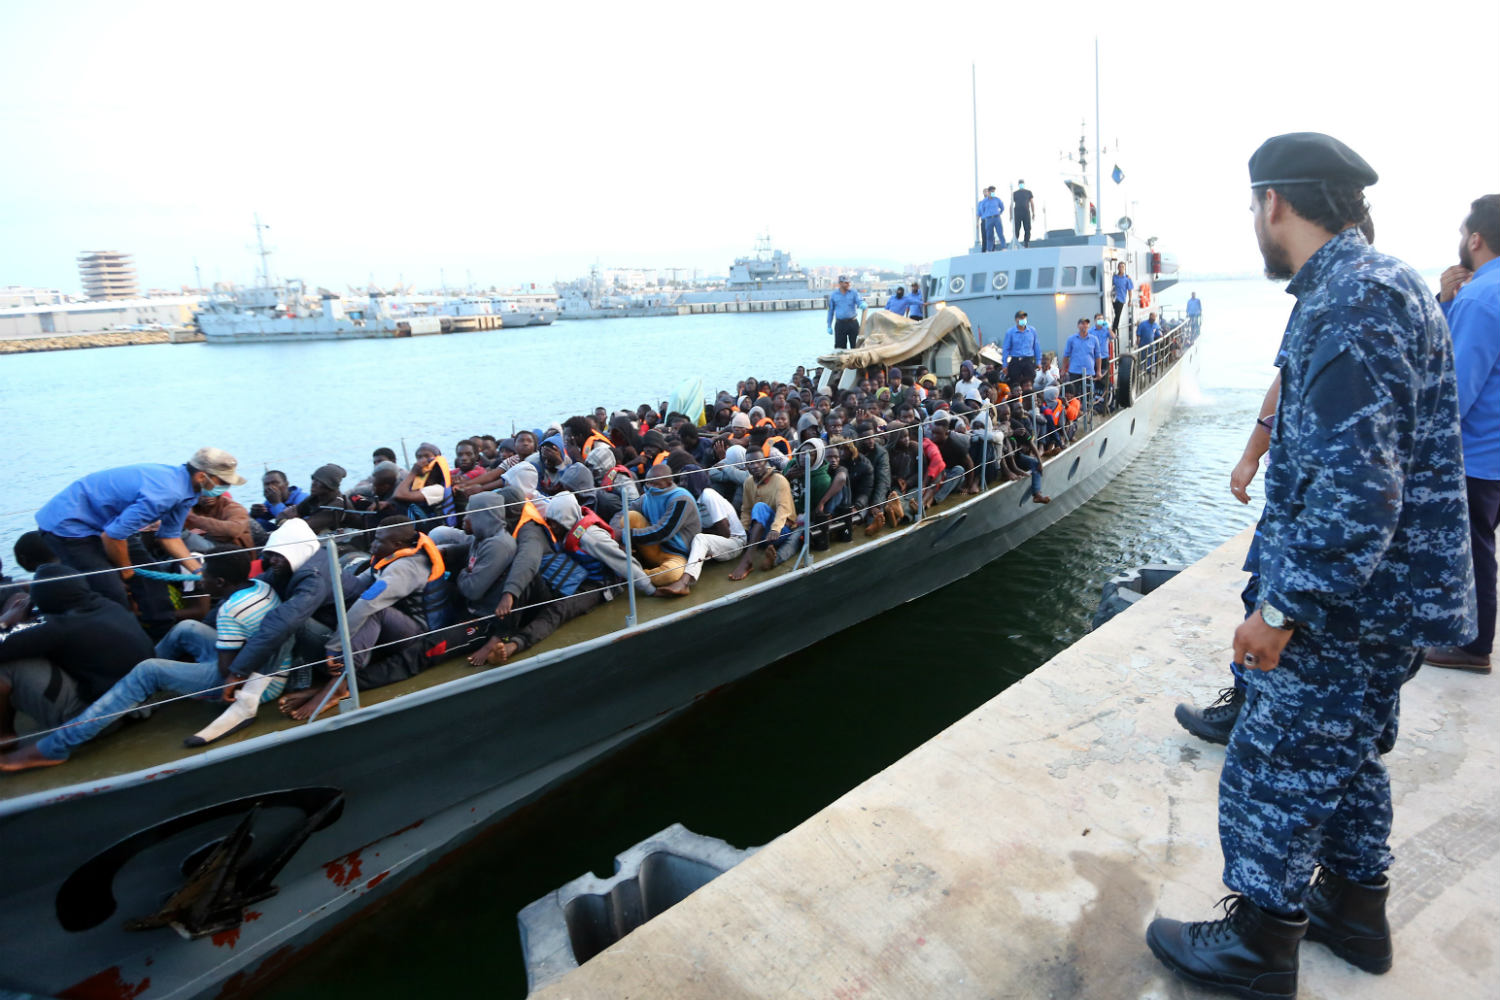 “Situatë e paqëndrueshme”, Italia kërcënon me mbyllje kufijsh për emigrantët